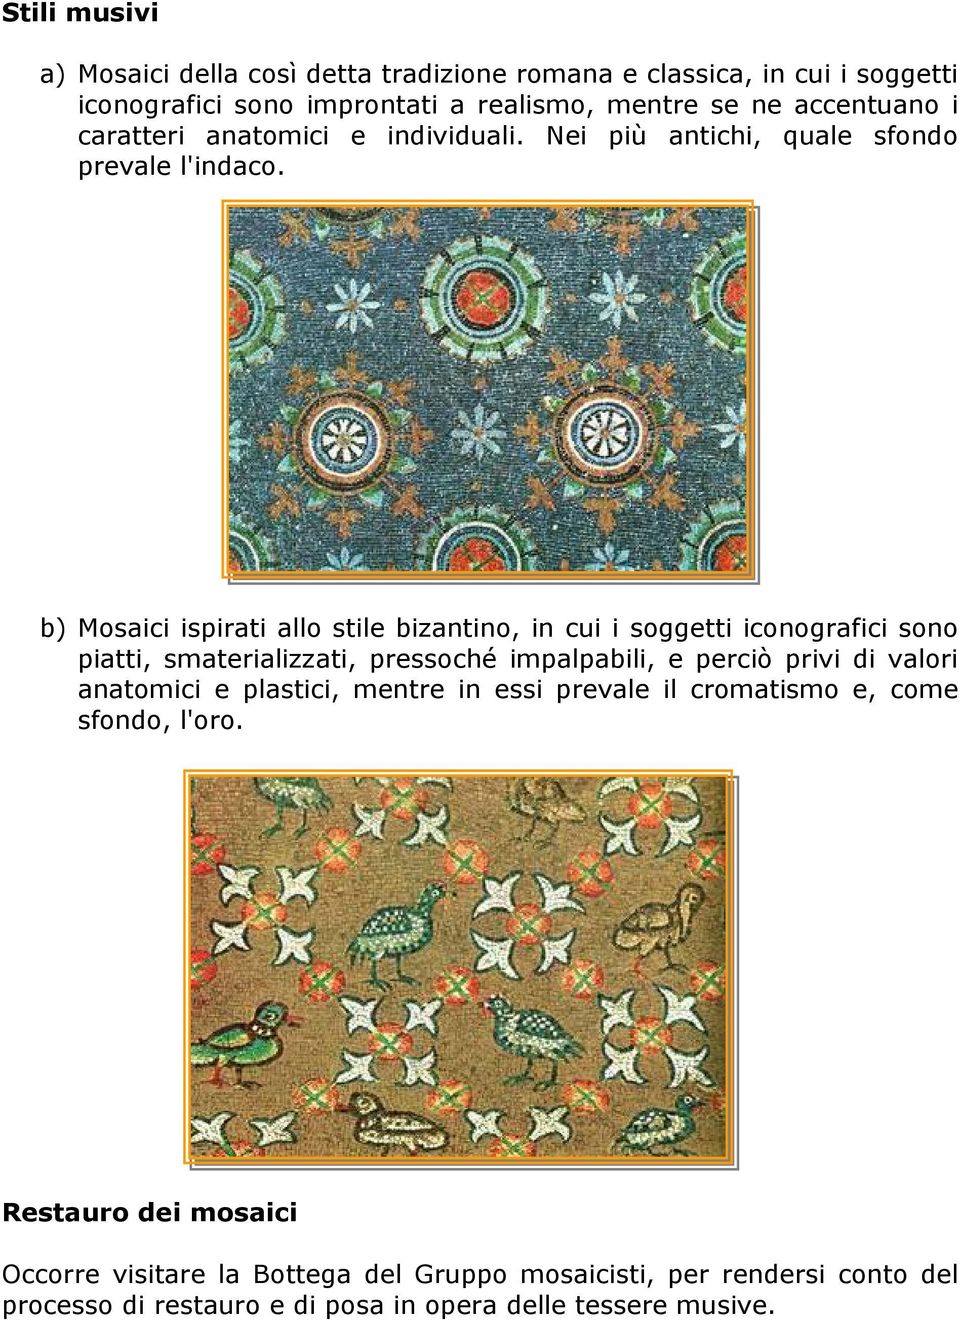 b) Mosaici ispirati allo stile bizantino, in cui i soggetti iconografici sono piatti, smaterializzati, pressoché impalpabili, e perciò privi di valori